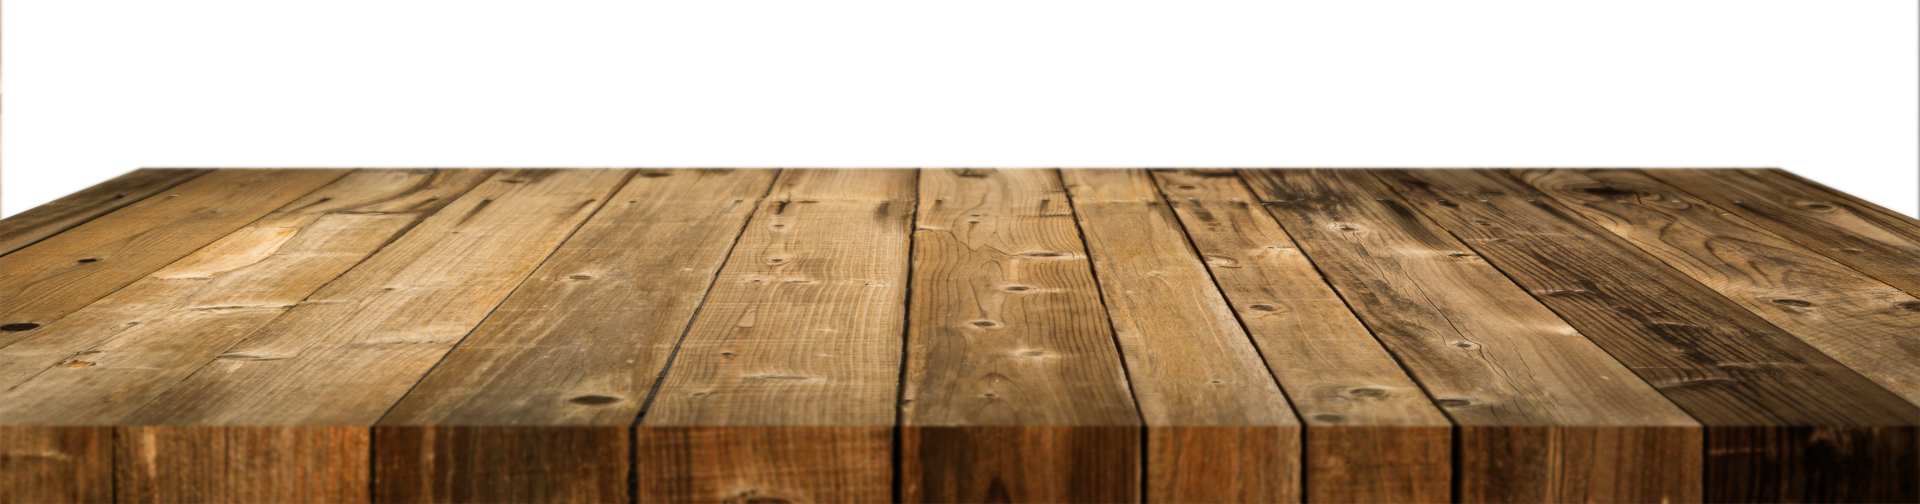 Mặt bàn gỗ rỗng trong suốt PNG miễn phí (Free transparent PNG empty wood plank tabletop) - Đừng bỏ lỡ cơ hội sử dụng tài nguyên miễn phí của chúng tôi để tạo ra những thiết kế đẹp mắt hơn. Với mặt bàn gỗ rỗng trong suốt PNG miễn phí, bạn sẽ có thêm các tùy chọn thiết kế phong phú, giúp bạn trở nên nghệ thuật và chuyên nghiệp hơn trong lĩnh vực thiết kế.